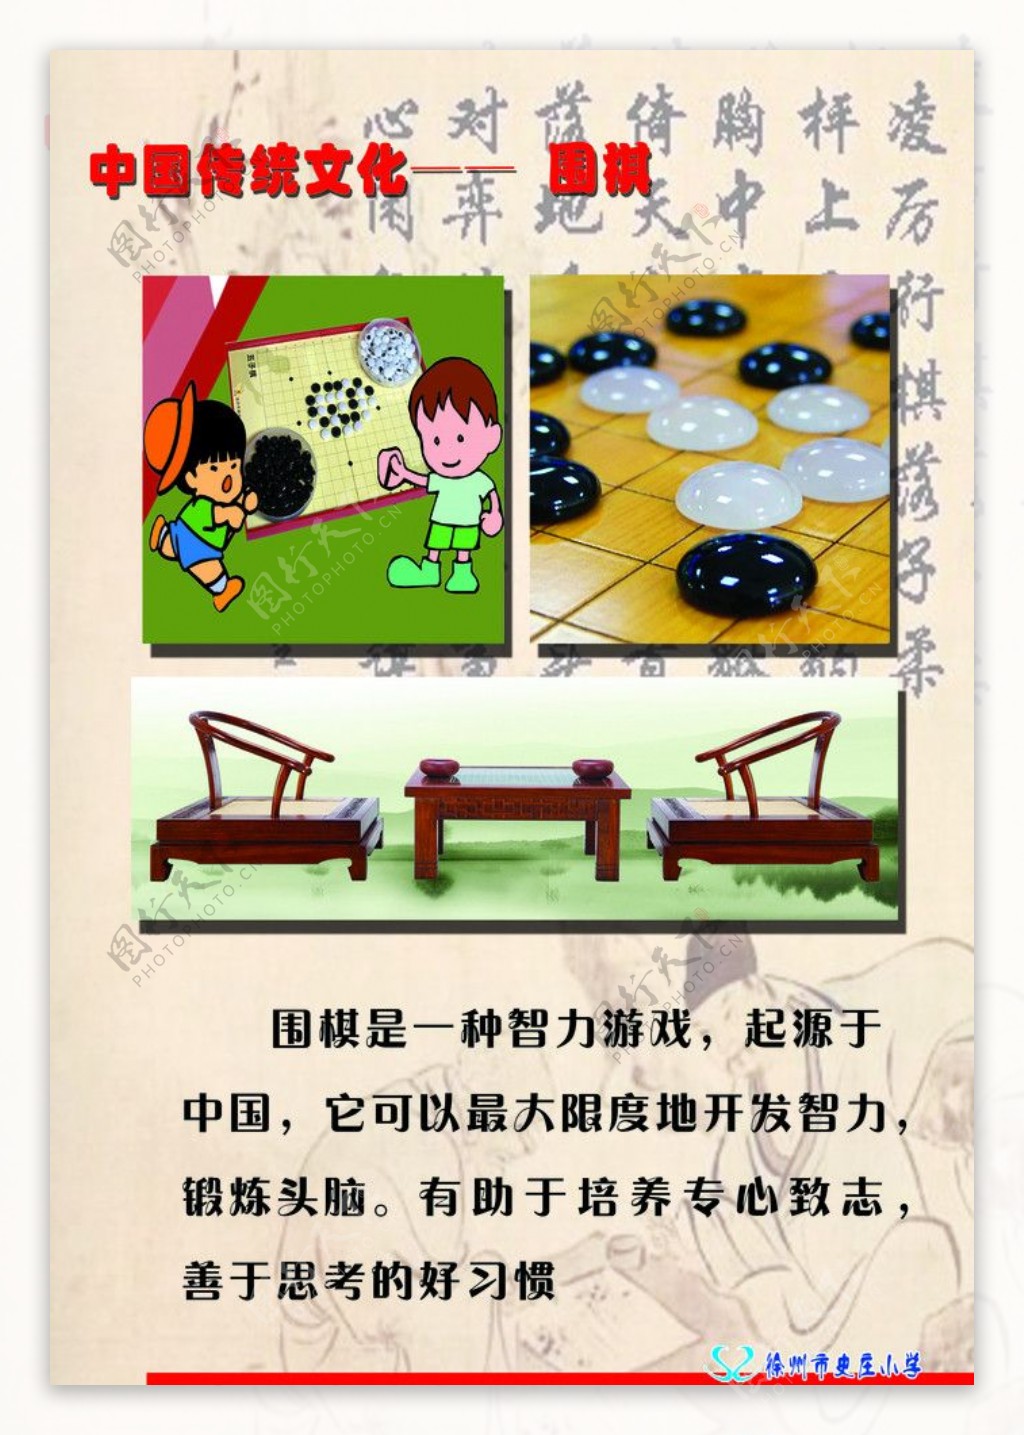 中国传统文化围棋图片